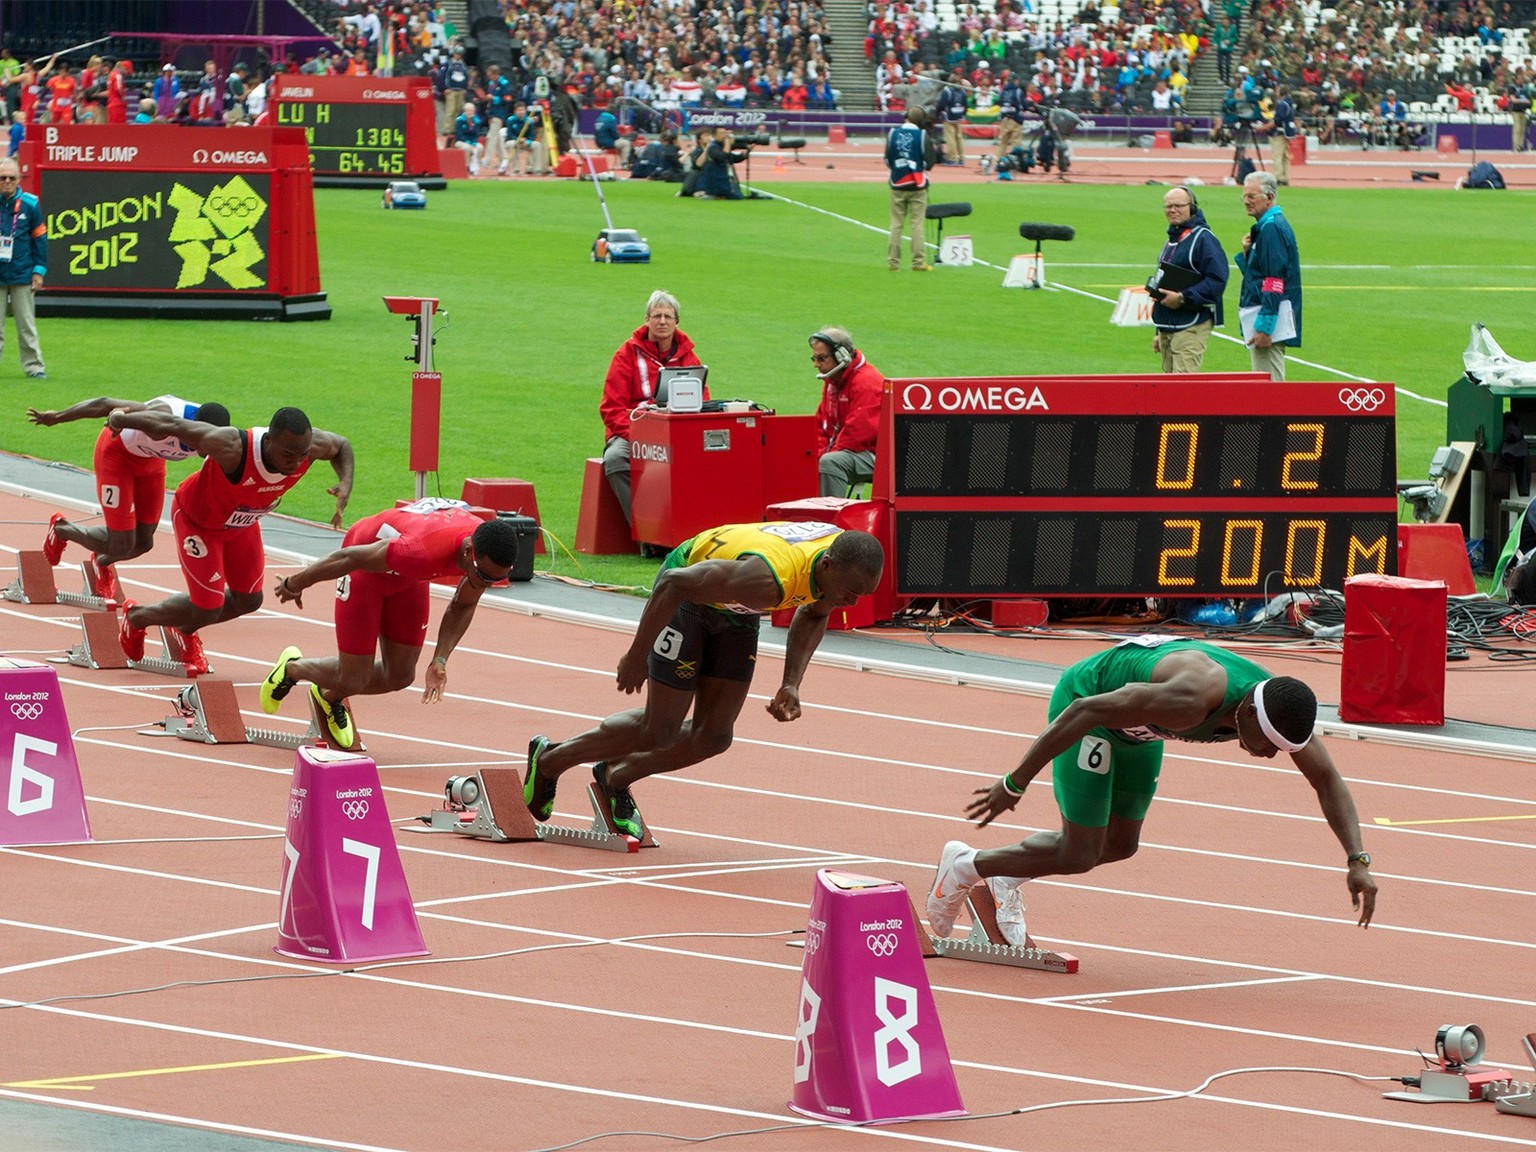 Start des 200-Meter-Rennens der Männer in London 2012 mit der Omega-Zeitanzeige im Hintergrund. https://commons.wikimedia.org/wiki/File:London_2012_200m_heat_1_start.jpg